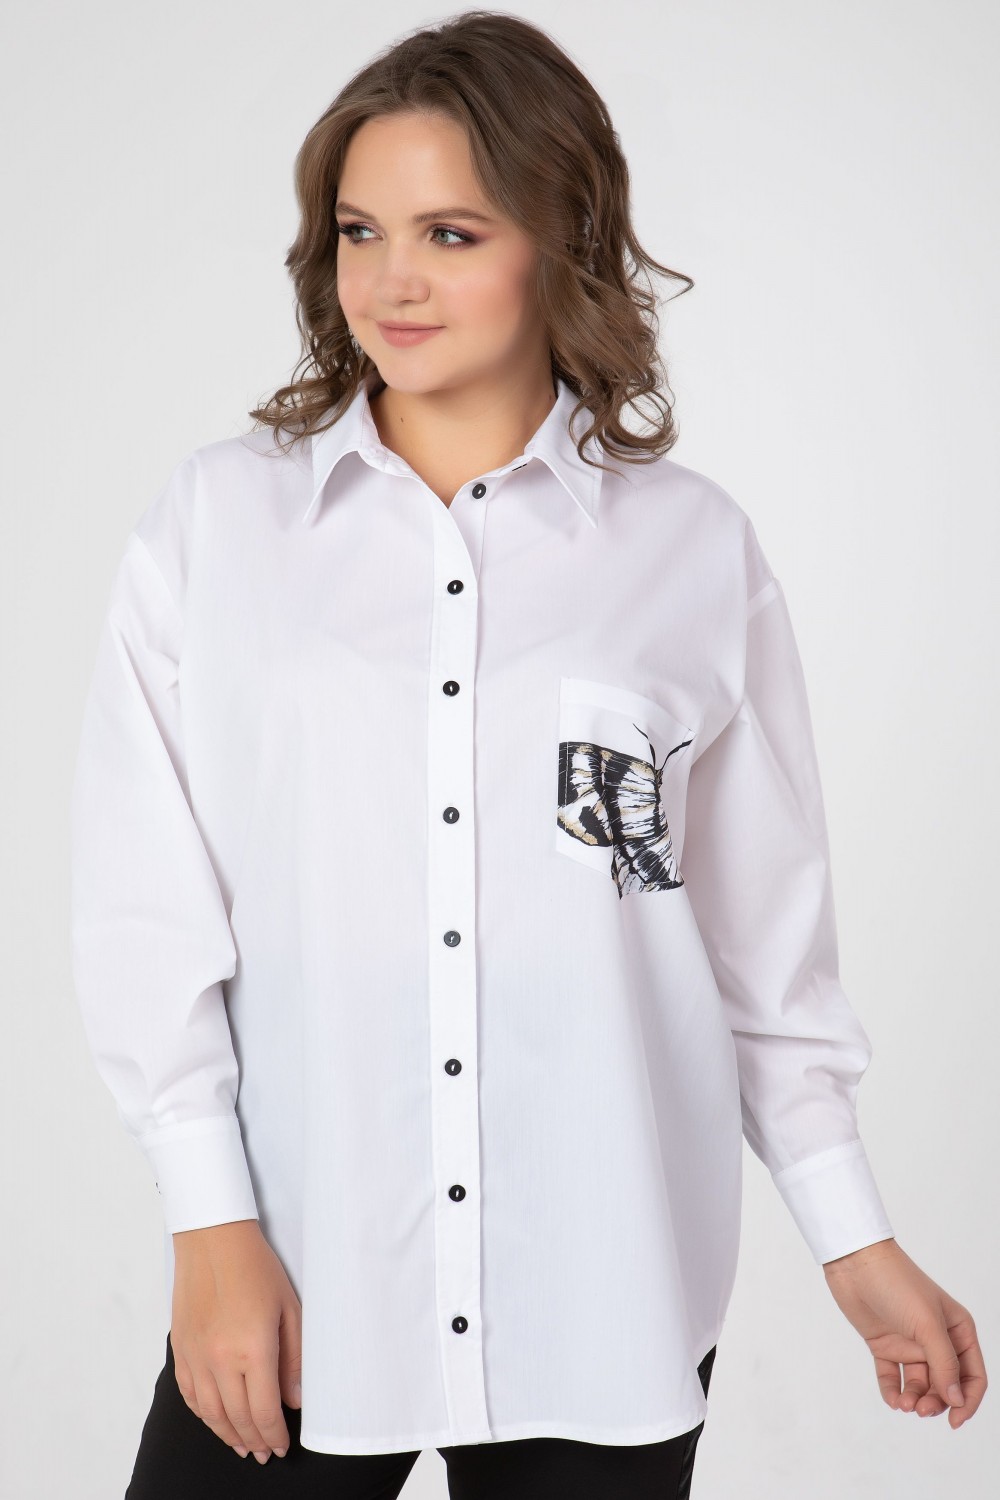 Прямая блузка на пуговицах и печатью "бабочка", белая